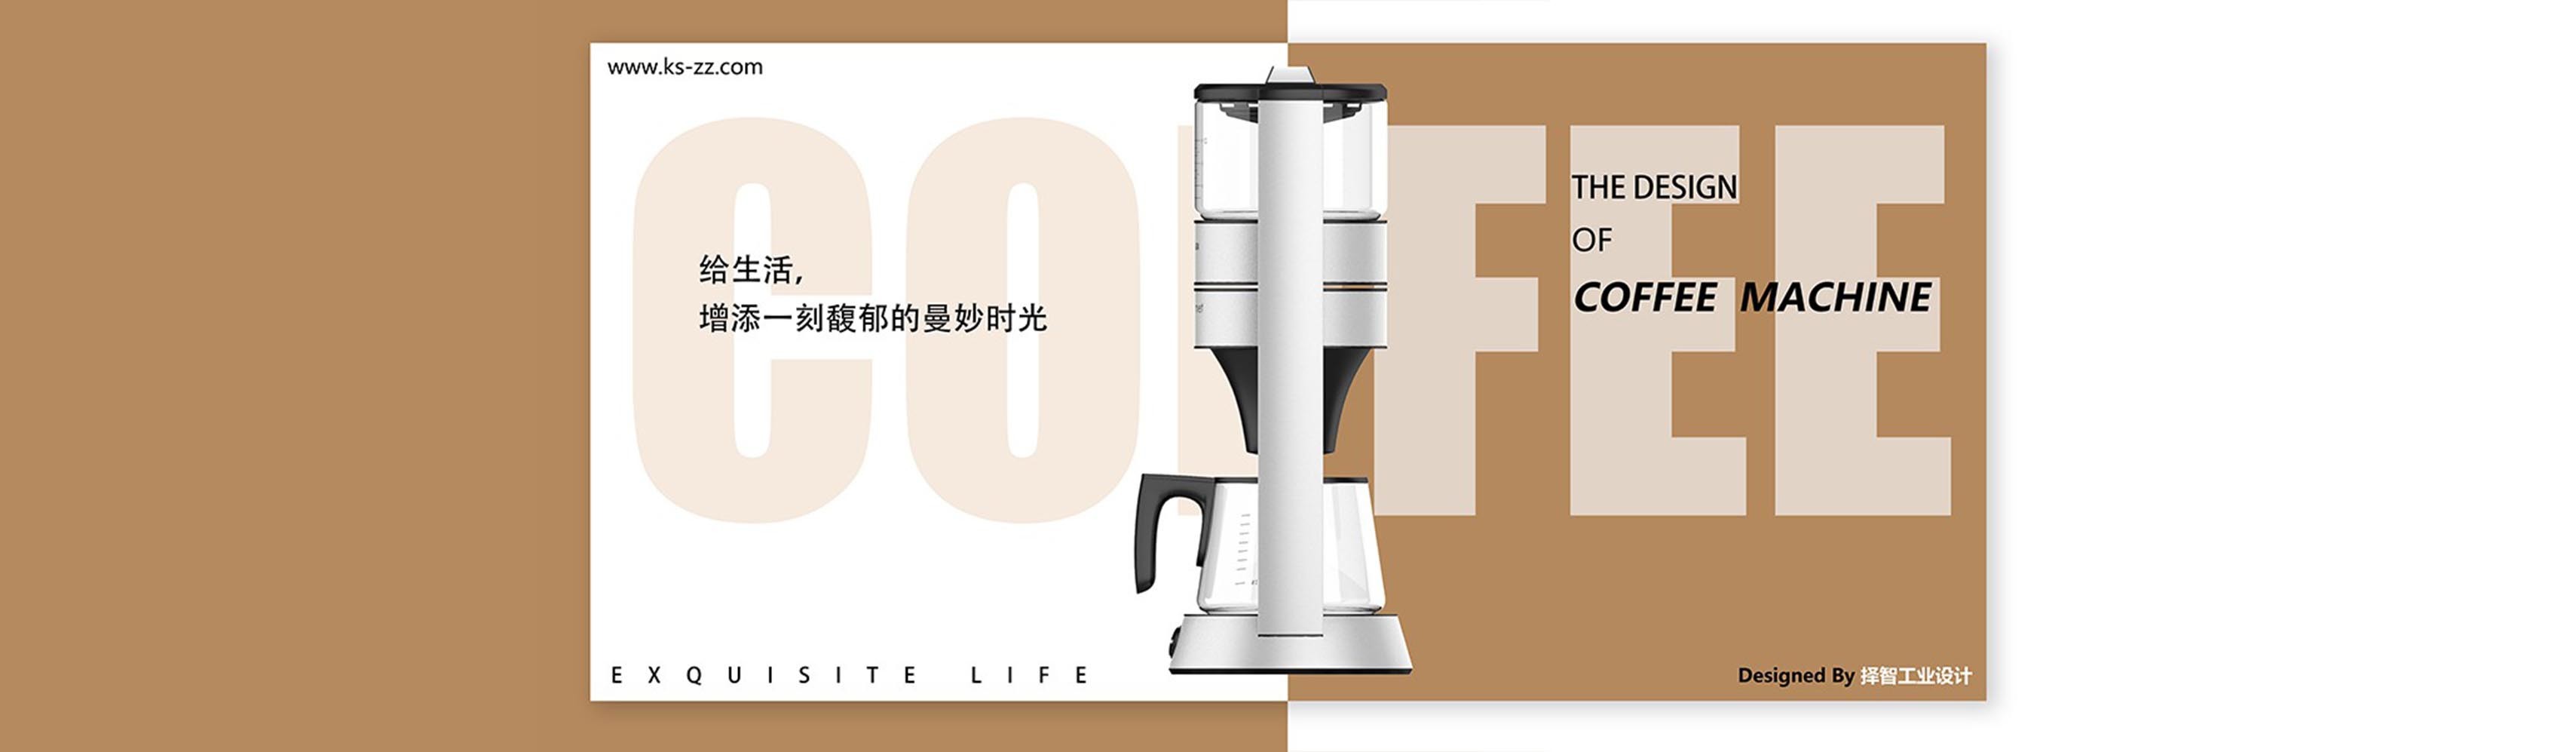 上海苏州产品设计 工业产品外观设计 结构设计 智能咖啡机结构设计